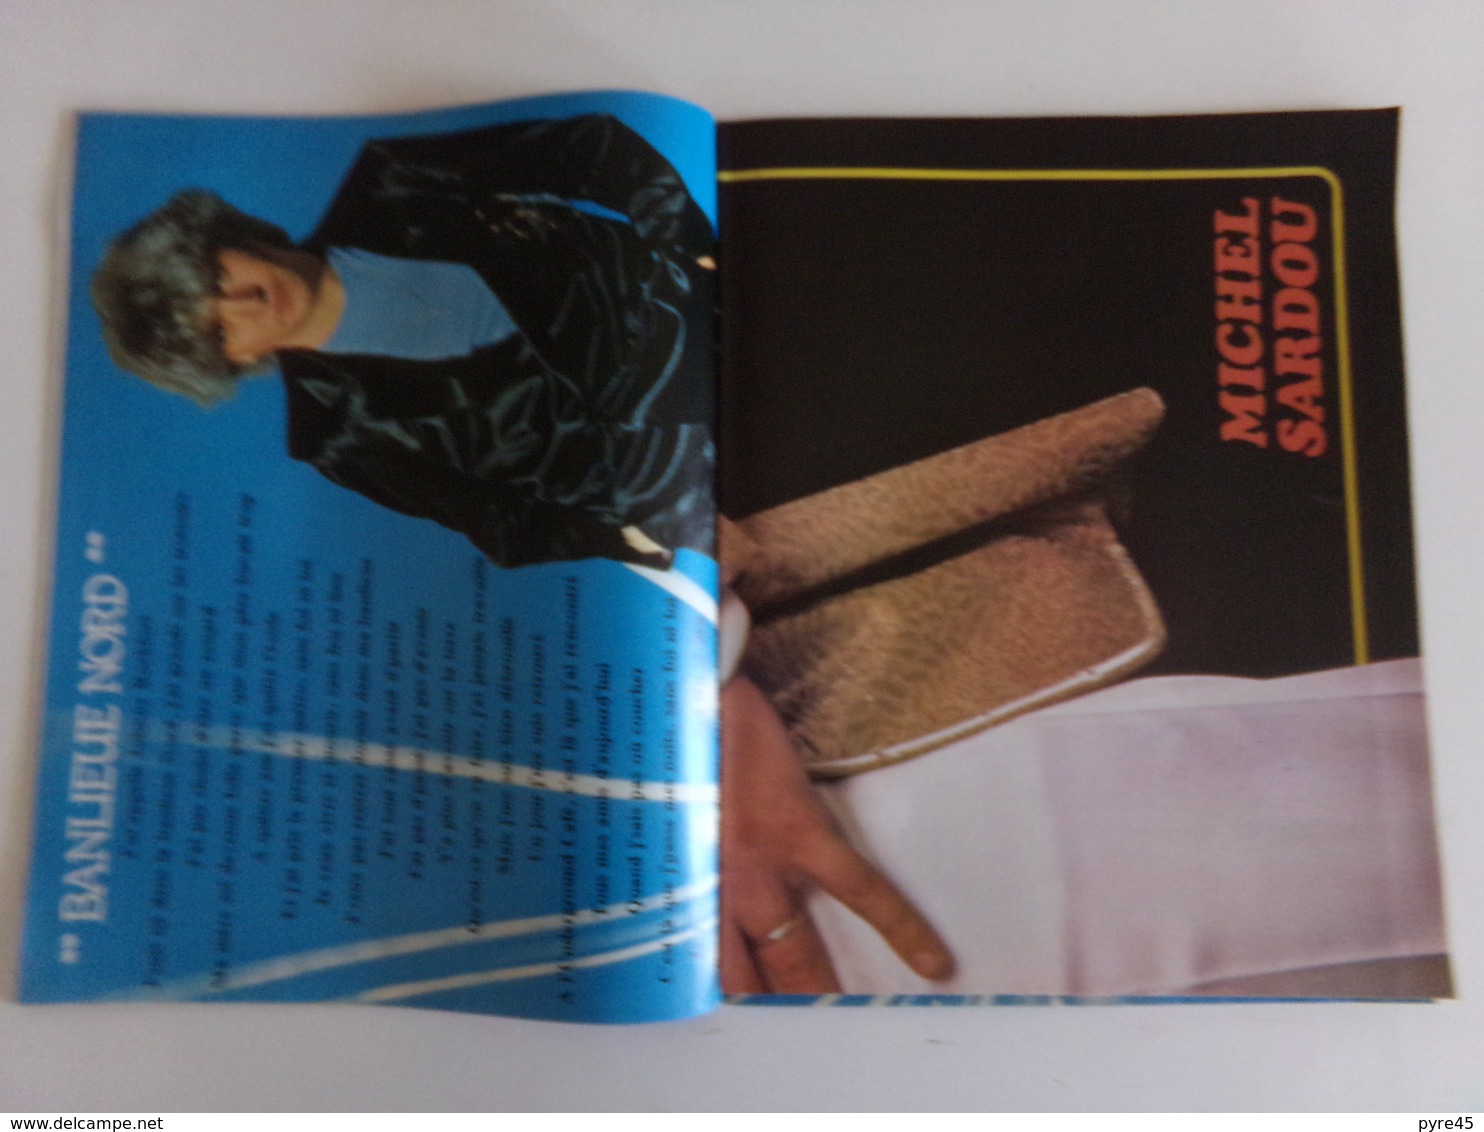 Revue " Salut " n° 92, 1979, Dire Straits, Rod Stewart, Il était une fois, Michel Delpech ...